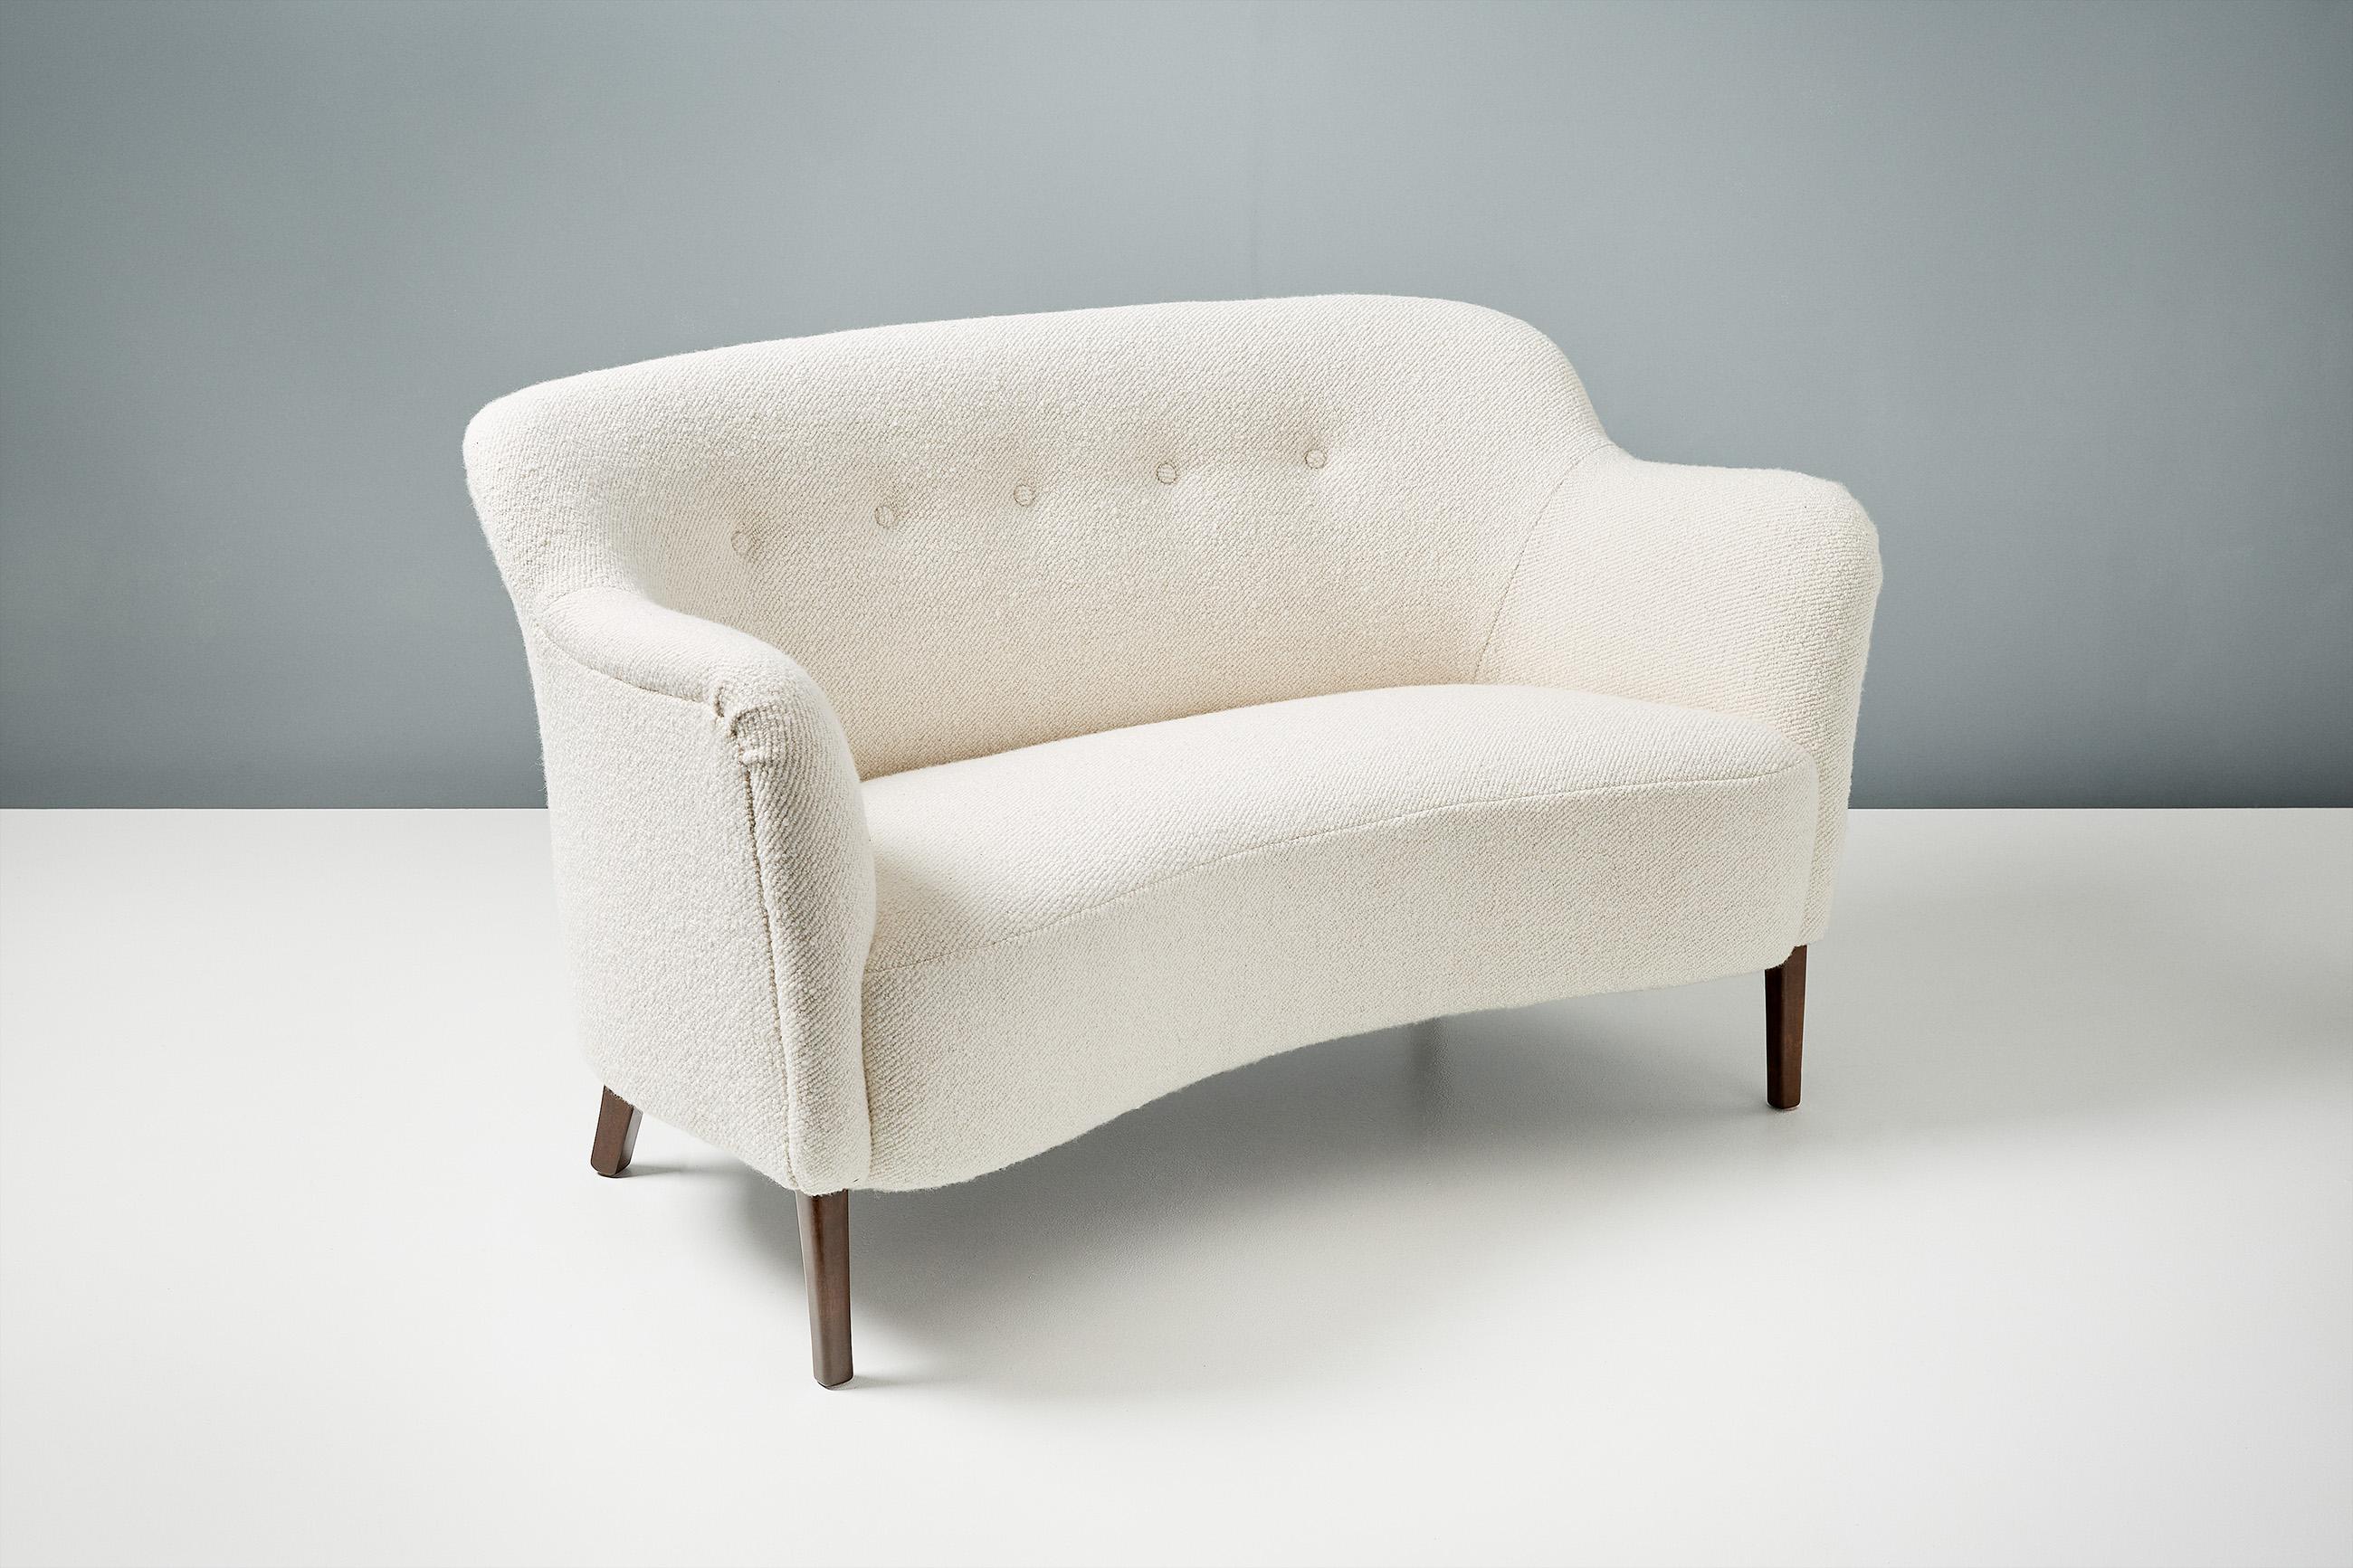 Maßgefertigtes Love Seat Sofa von Alfred Kristensen. Erhältlich in COM (Dänisch) im Angebot